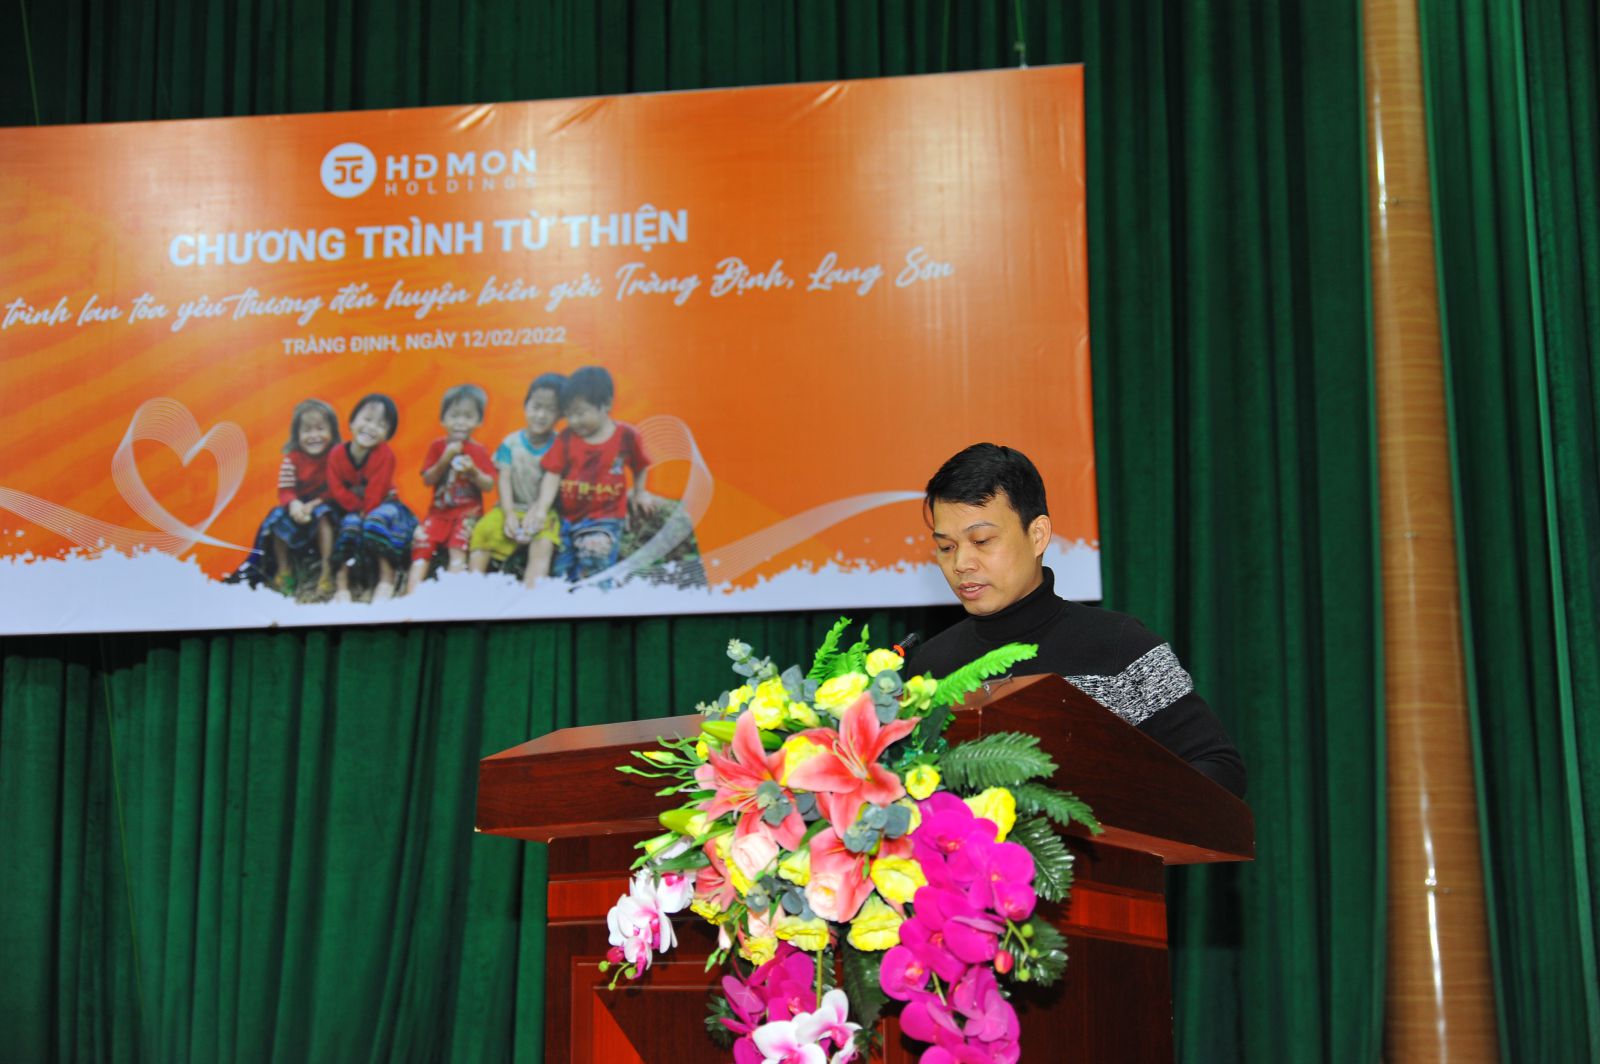 Ông Trần Mạnh Lực - Trưởng ban Nhân sự Tập đoàn HDMon Holdings chia sẻ ýp/nghĩa chương trình từ thiện